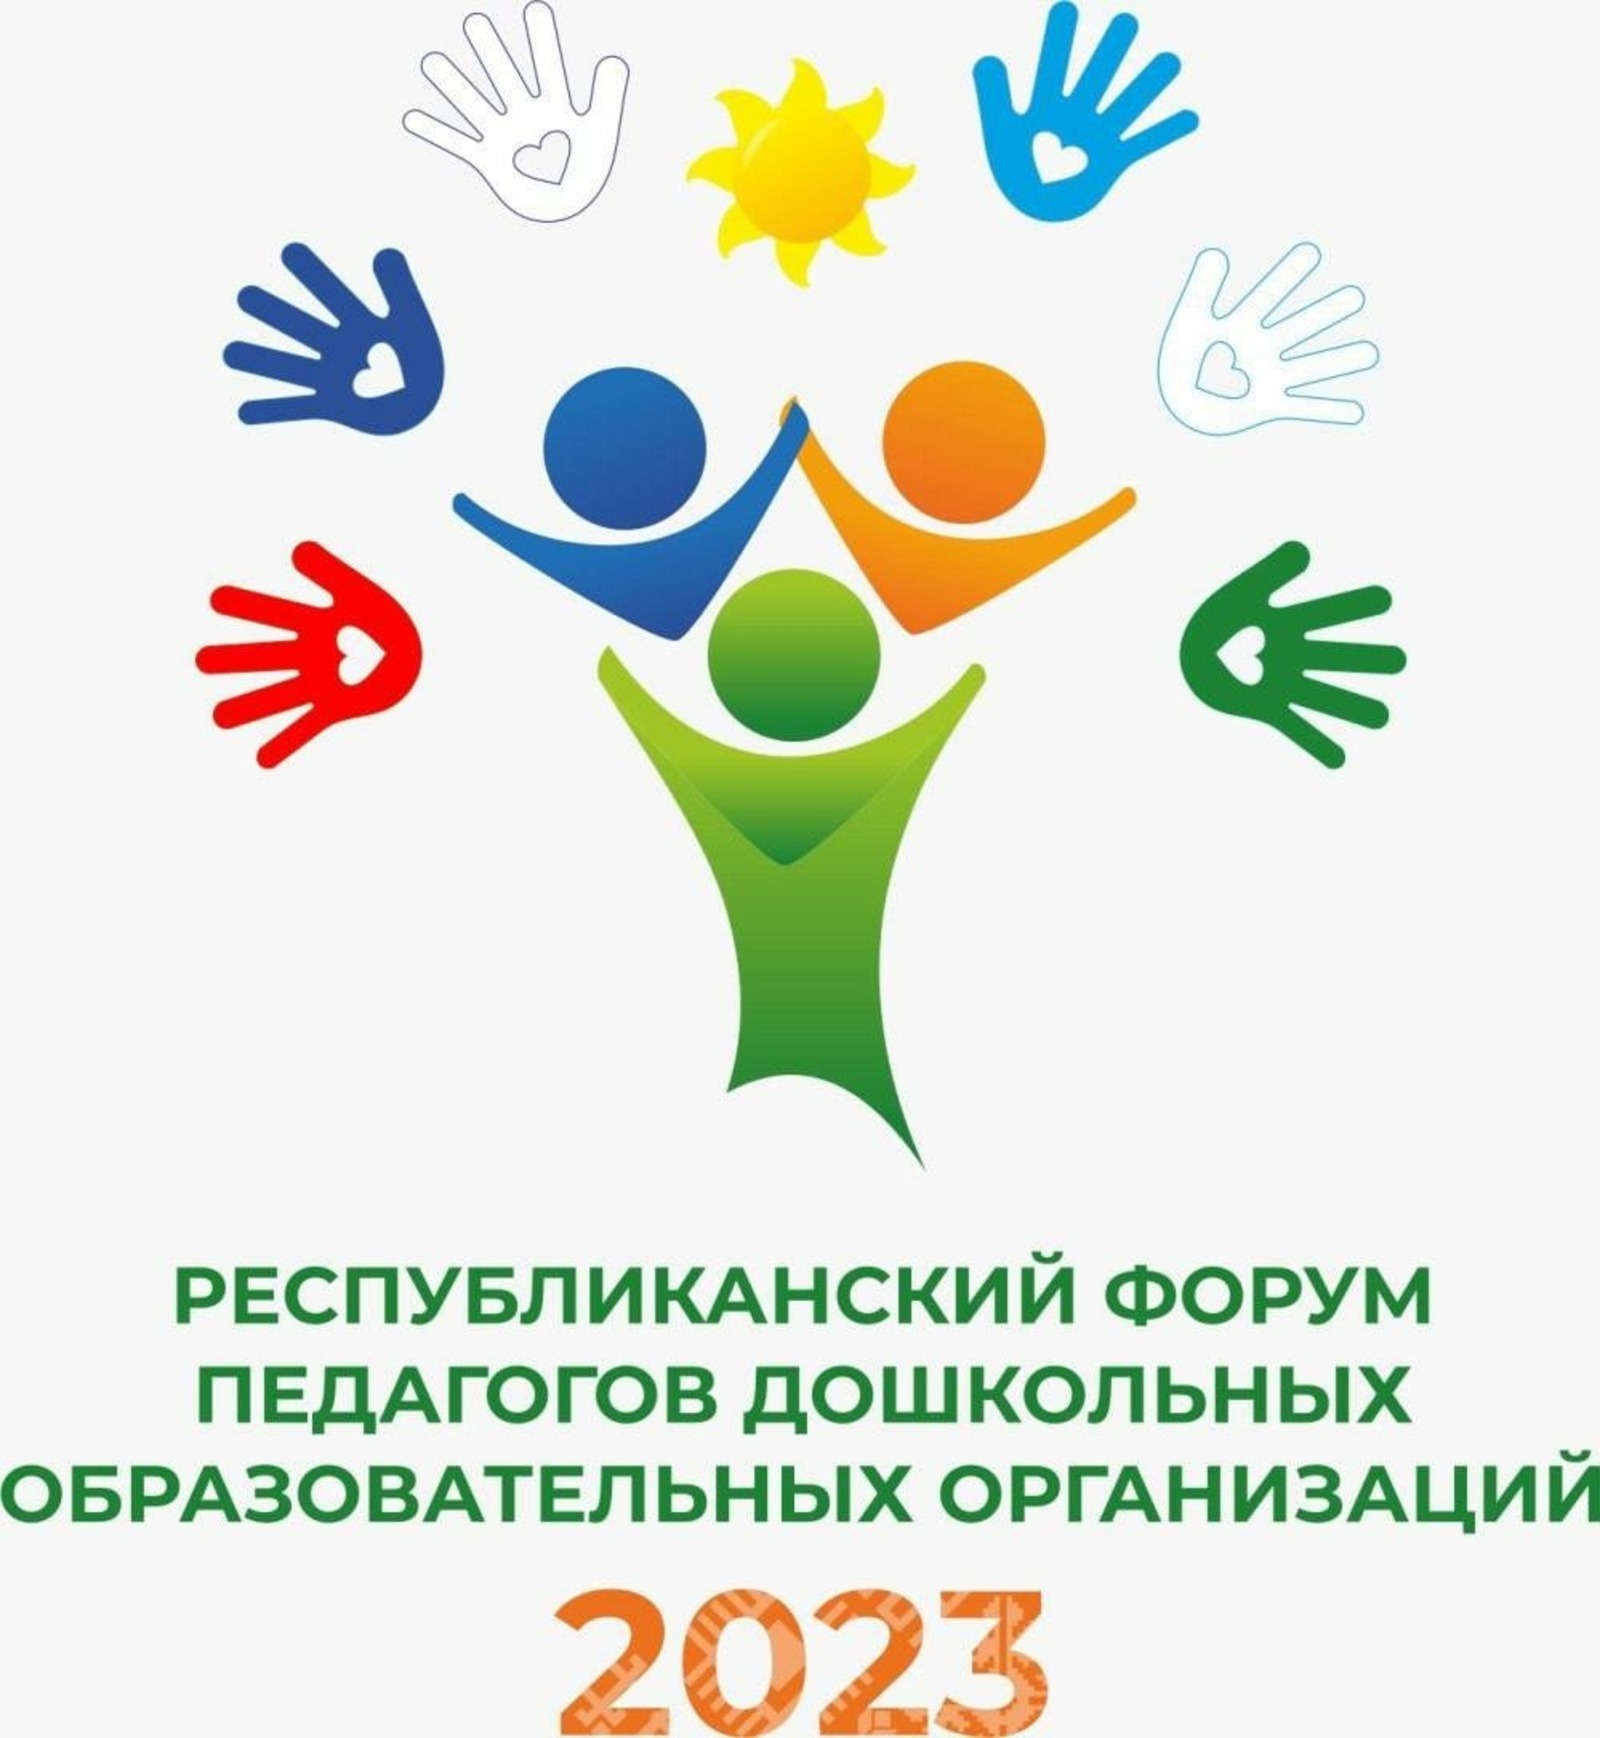 В Башкирии состоится республиканский форум педагогов детских садов